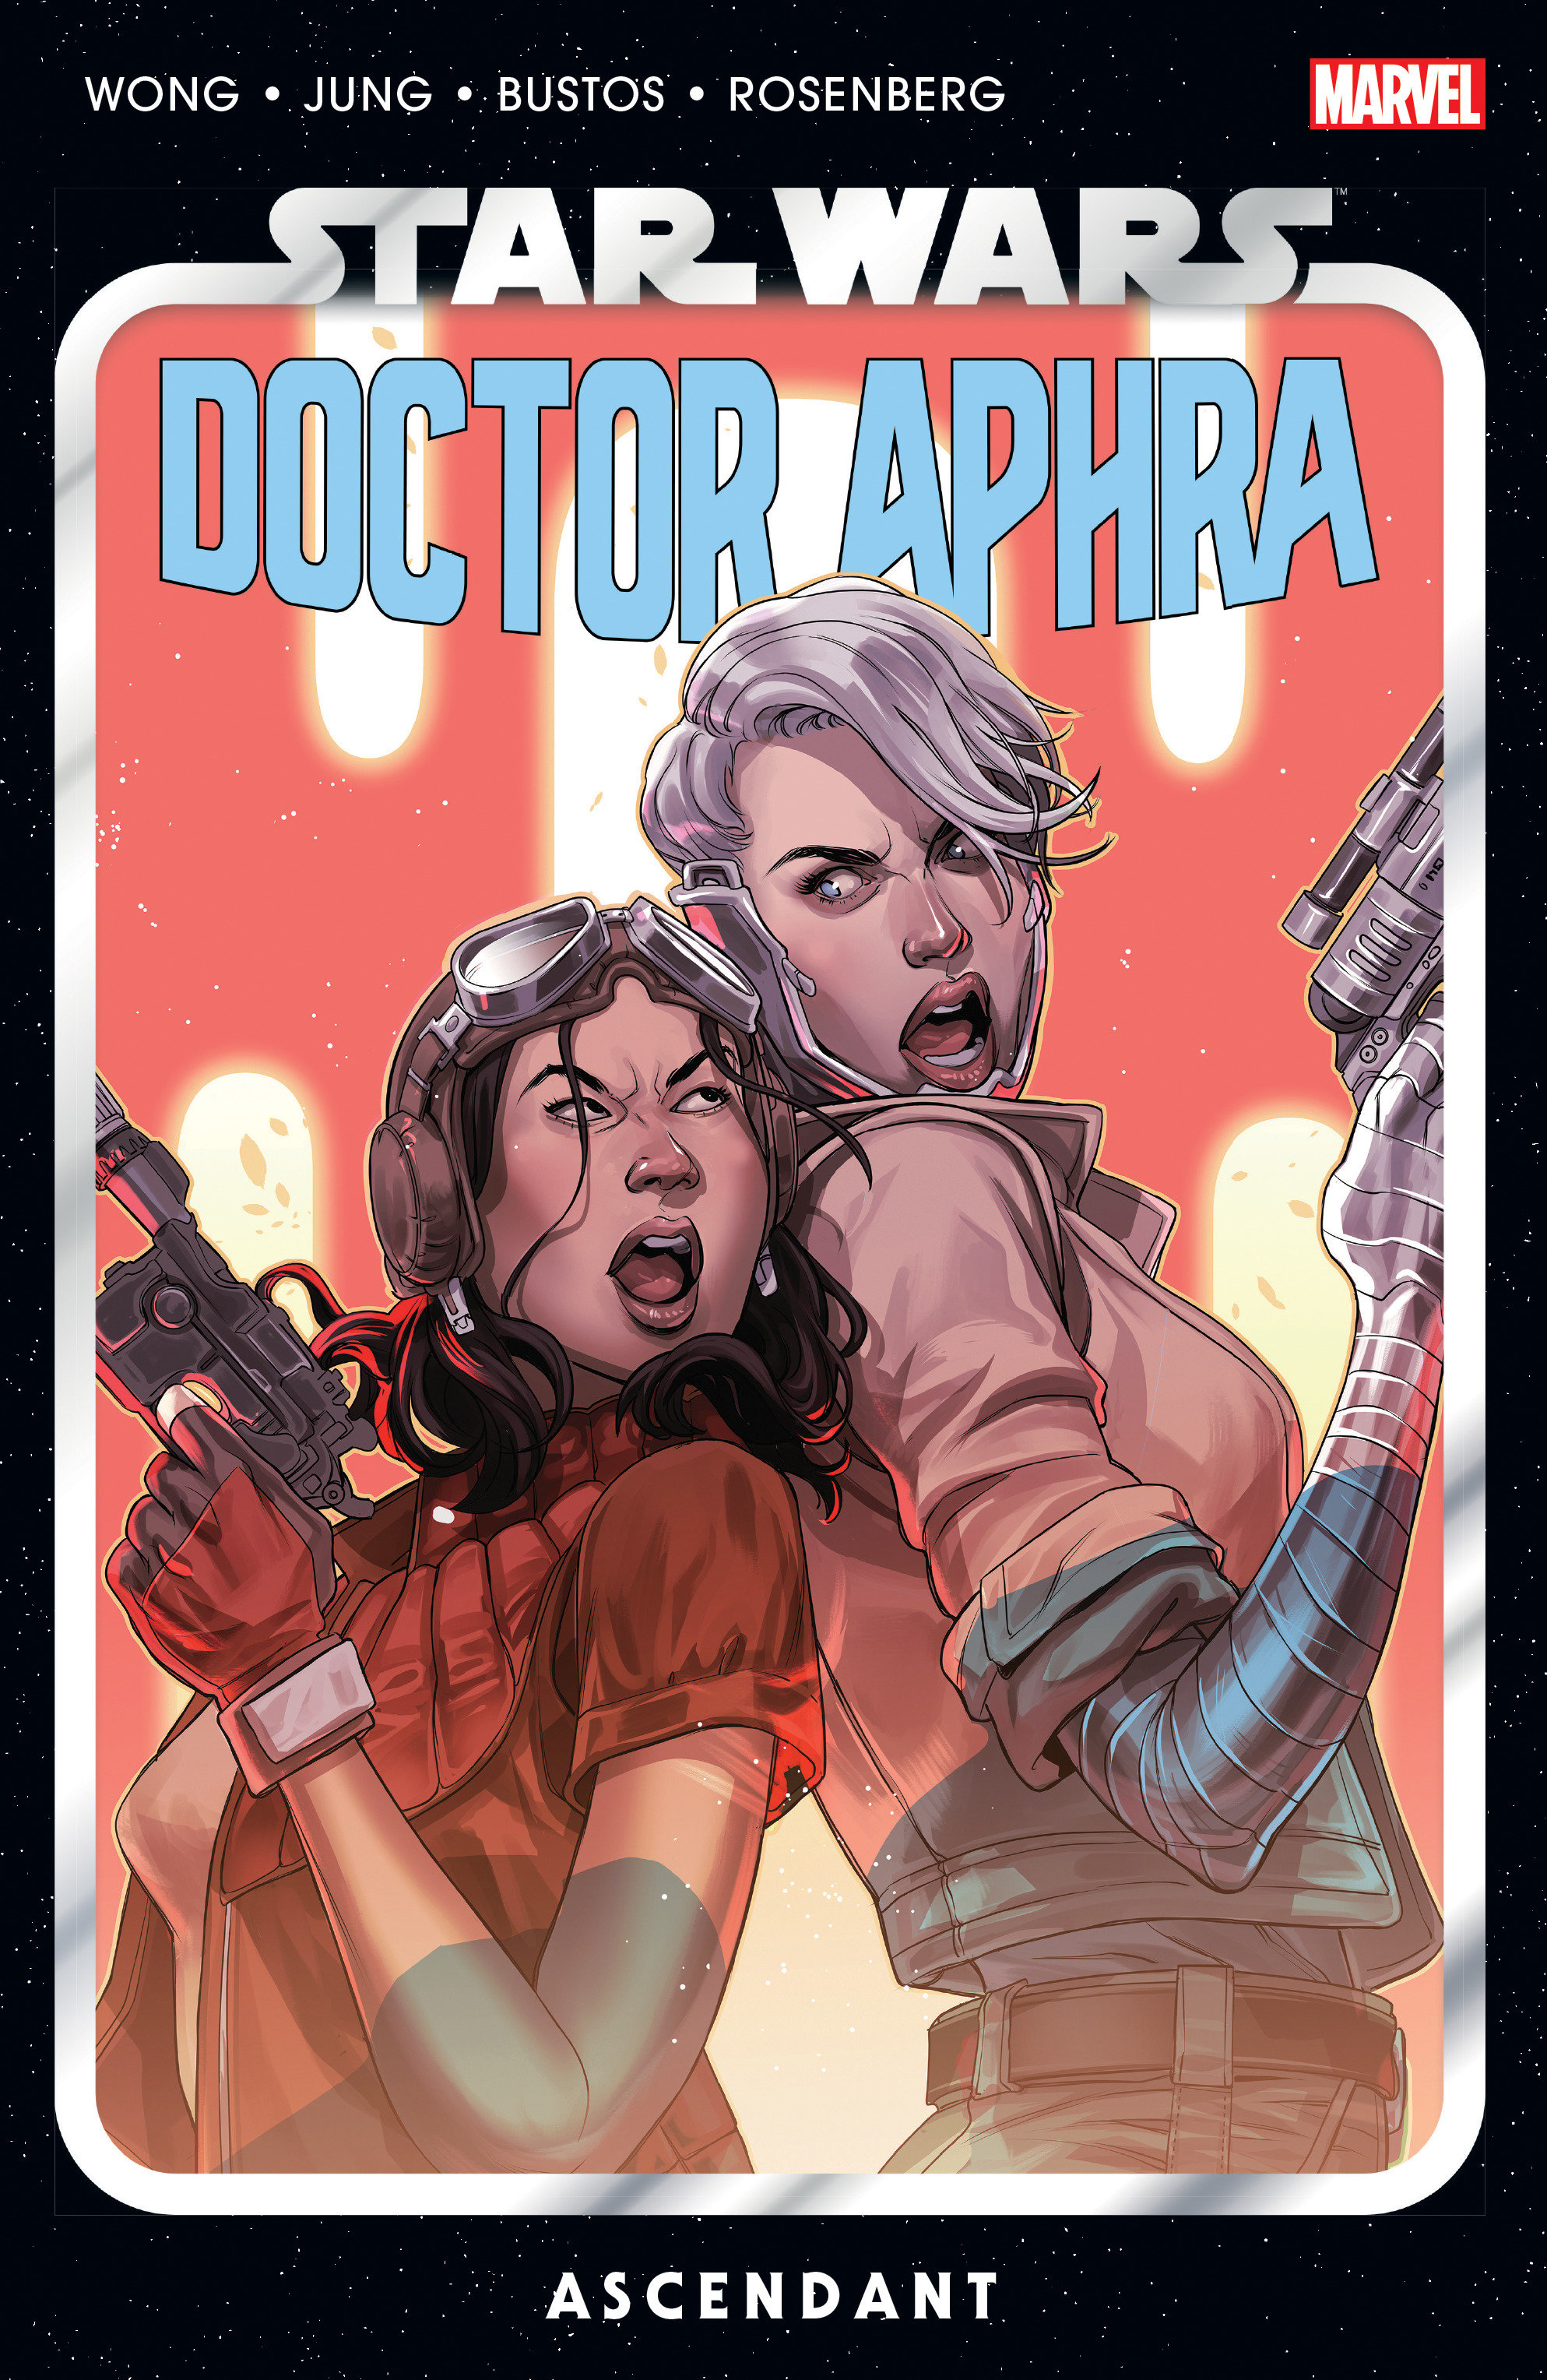 Star Wars: Doctor Aphra Graphic Novel Volume 6 Ascendant